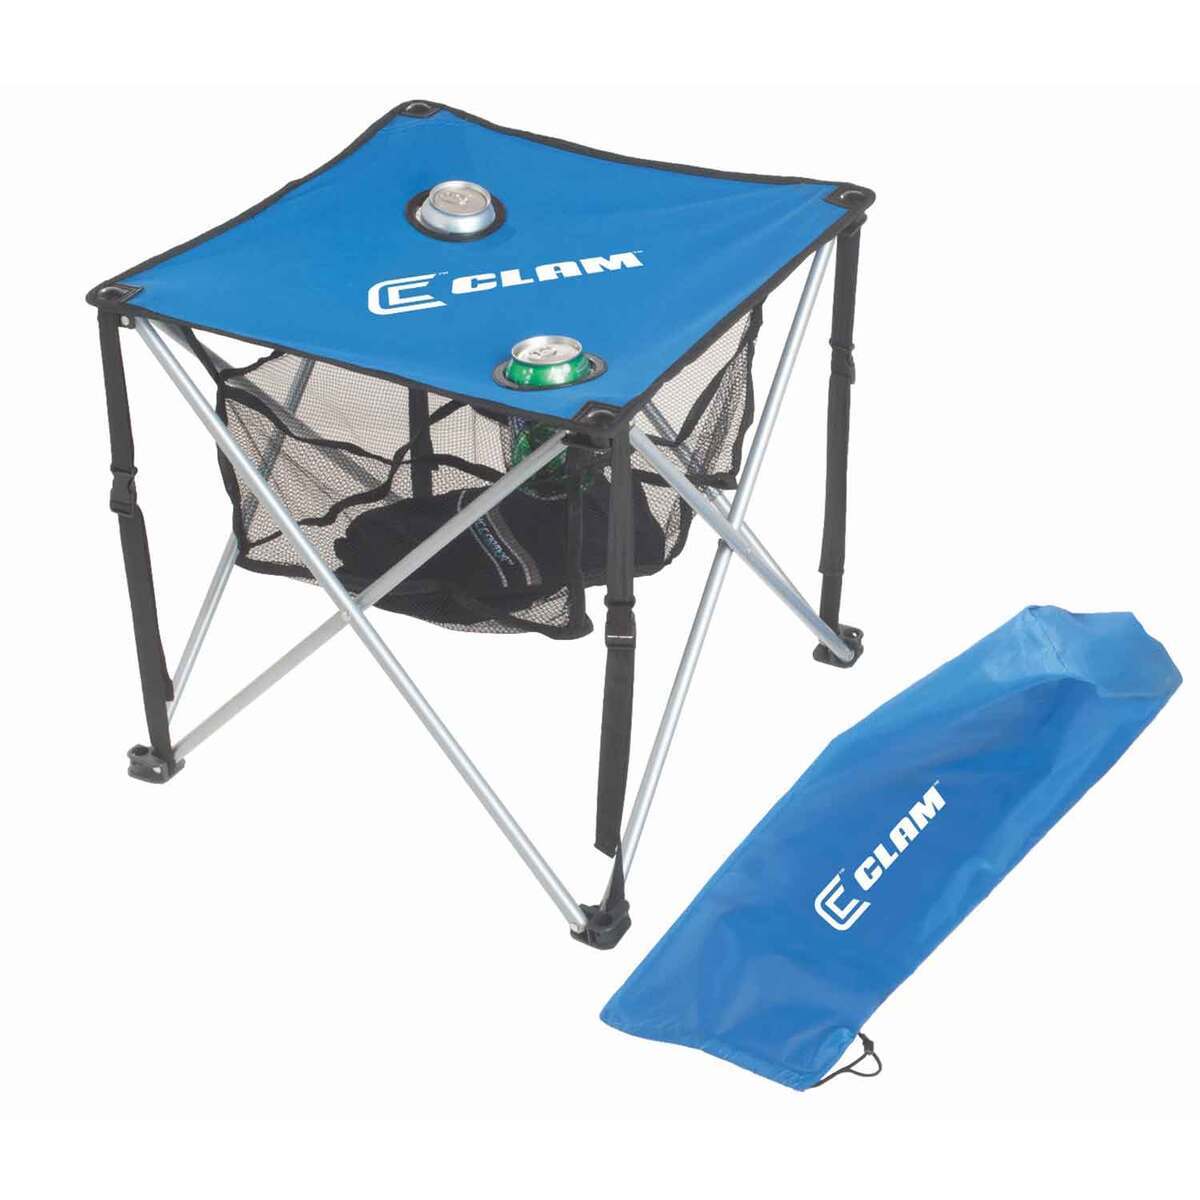 https://www.sportsmans.com/medias/clam-quick-pack-square-table-ice-fishing-shelter-accessory-1372430-1.jpg?context=bWFzdGVyfGltYWdlc3w2Njk5N3xpbWFnZS9qcGVnfGFHWTBMMmhtTXk4eE1EYzROREE1TnpneU9EZzVOQzh4TXpjeU5ETXdMVEZmWW1GelpTMWpiMjUyWlhKemFXOXVSbTl5YldGMFh6RXlNREF0WTI5dWRtVnljMmx2YmtadmNtMWhkQXxjMmRhOTY4NDcwNzg4MjNmNDVhOWZkNzA1NDQyMzk5OTNlZGUyYjE1YTU3YTFkMzg1NjFlNjYyNzI3YTdkYTQ4